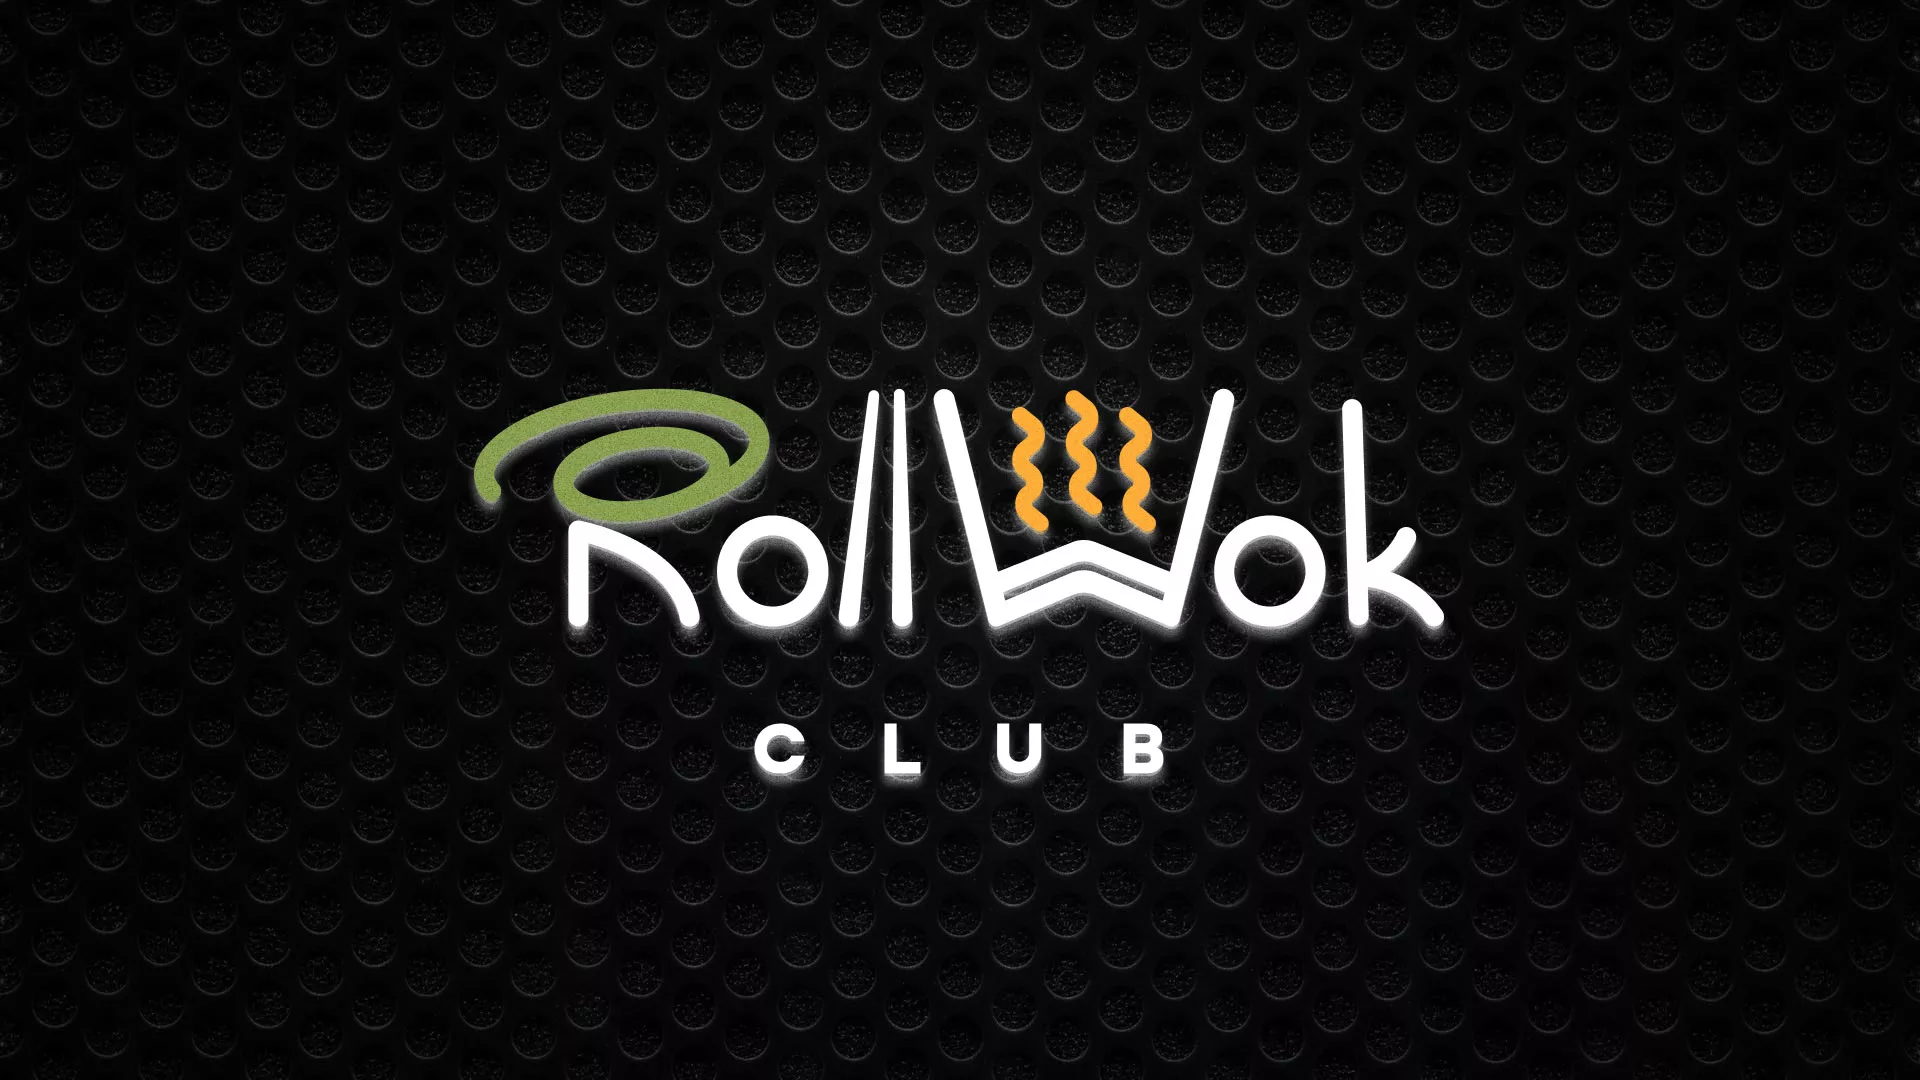 Брендирование торговых точек суши-бара «Roll Wok Club» в Соколе